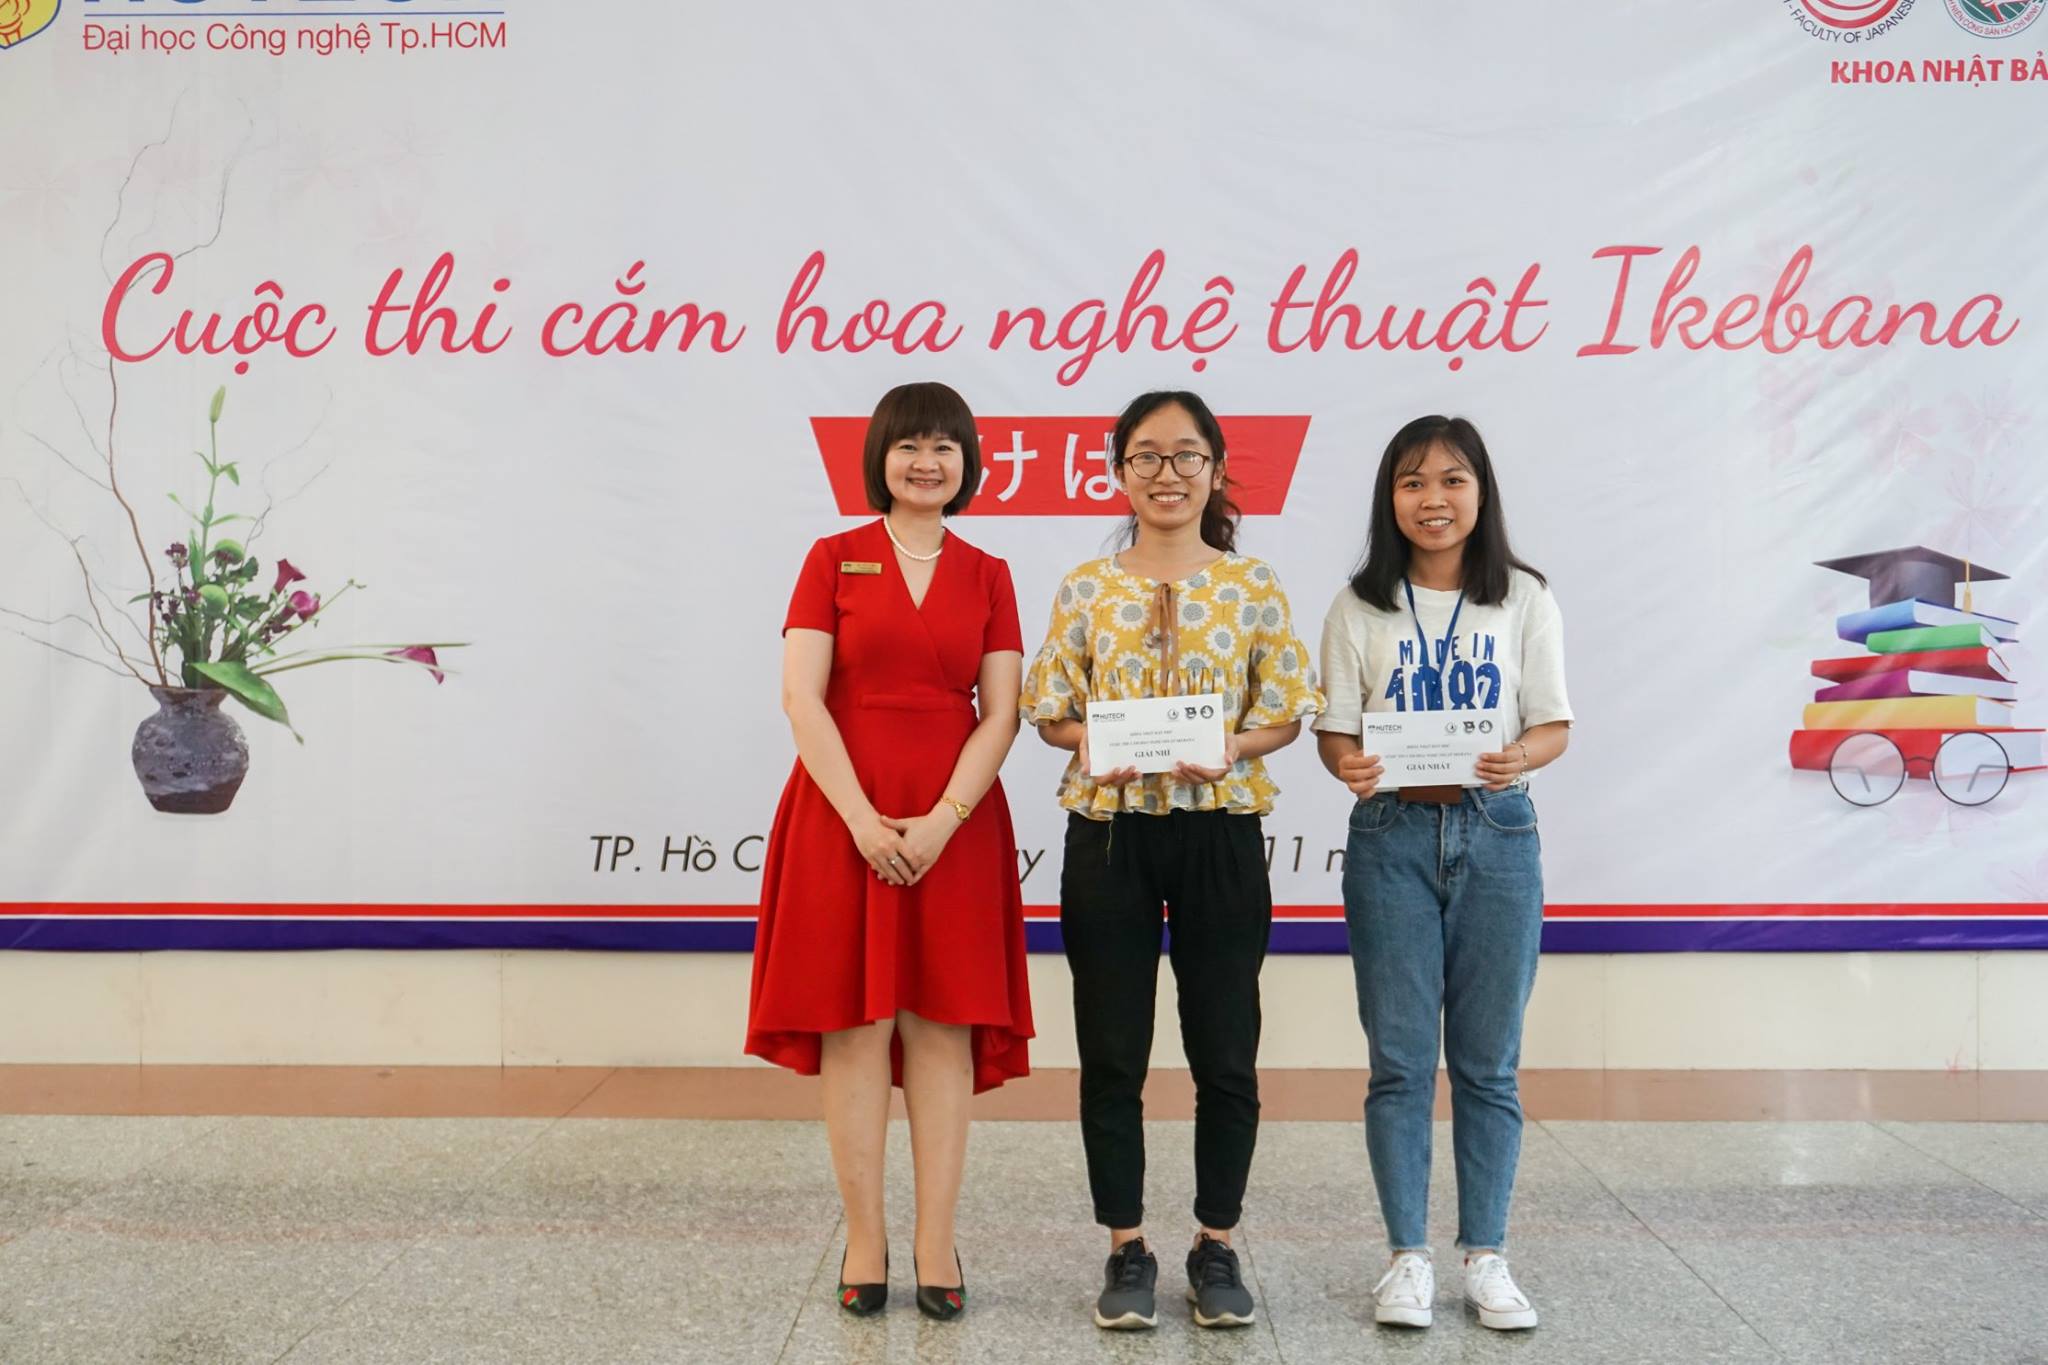 Rộn ràng cuộc thi "Căm hóa nghệ thuật Ikebana" kỷ niệm ngày Nhà giáo Việt Nam 20/11 15